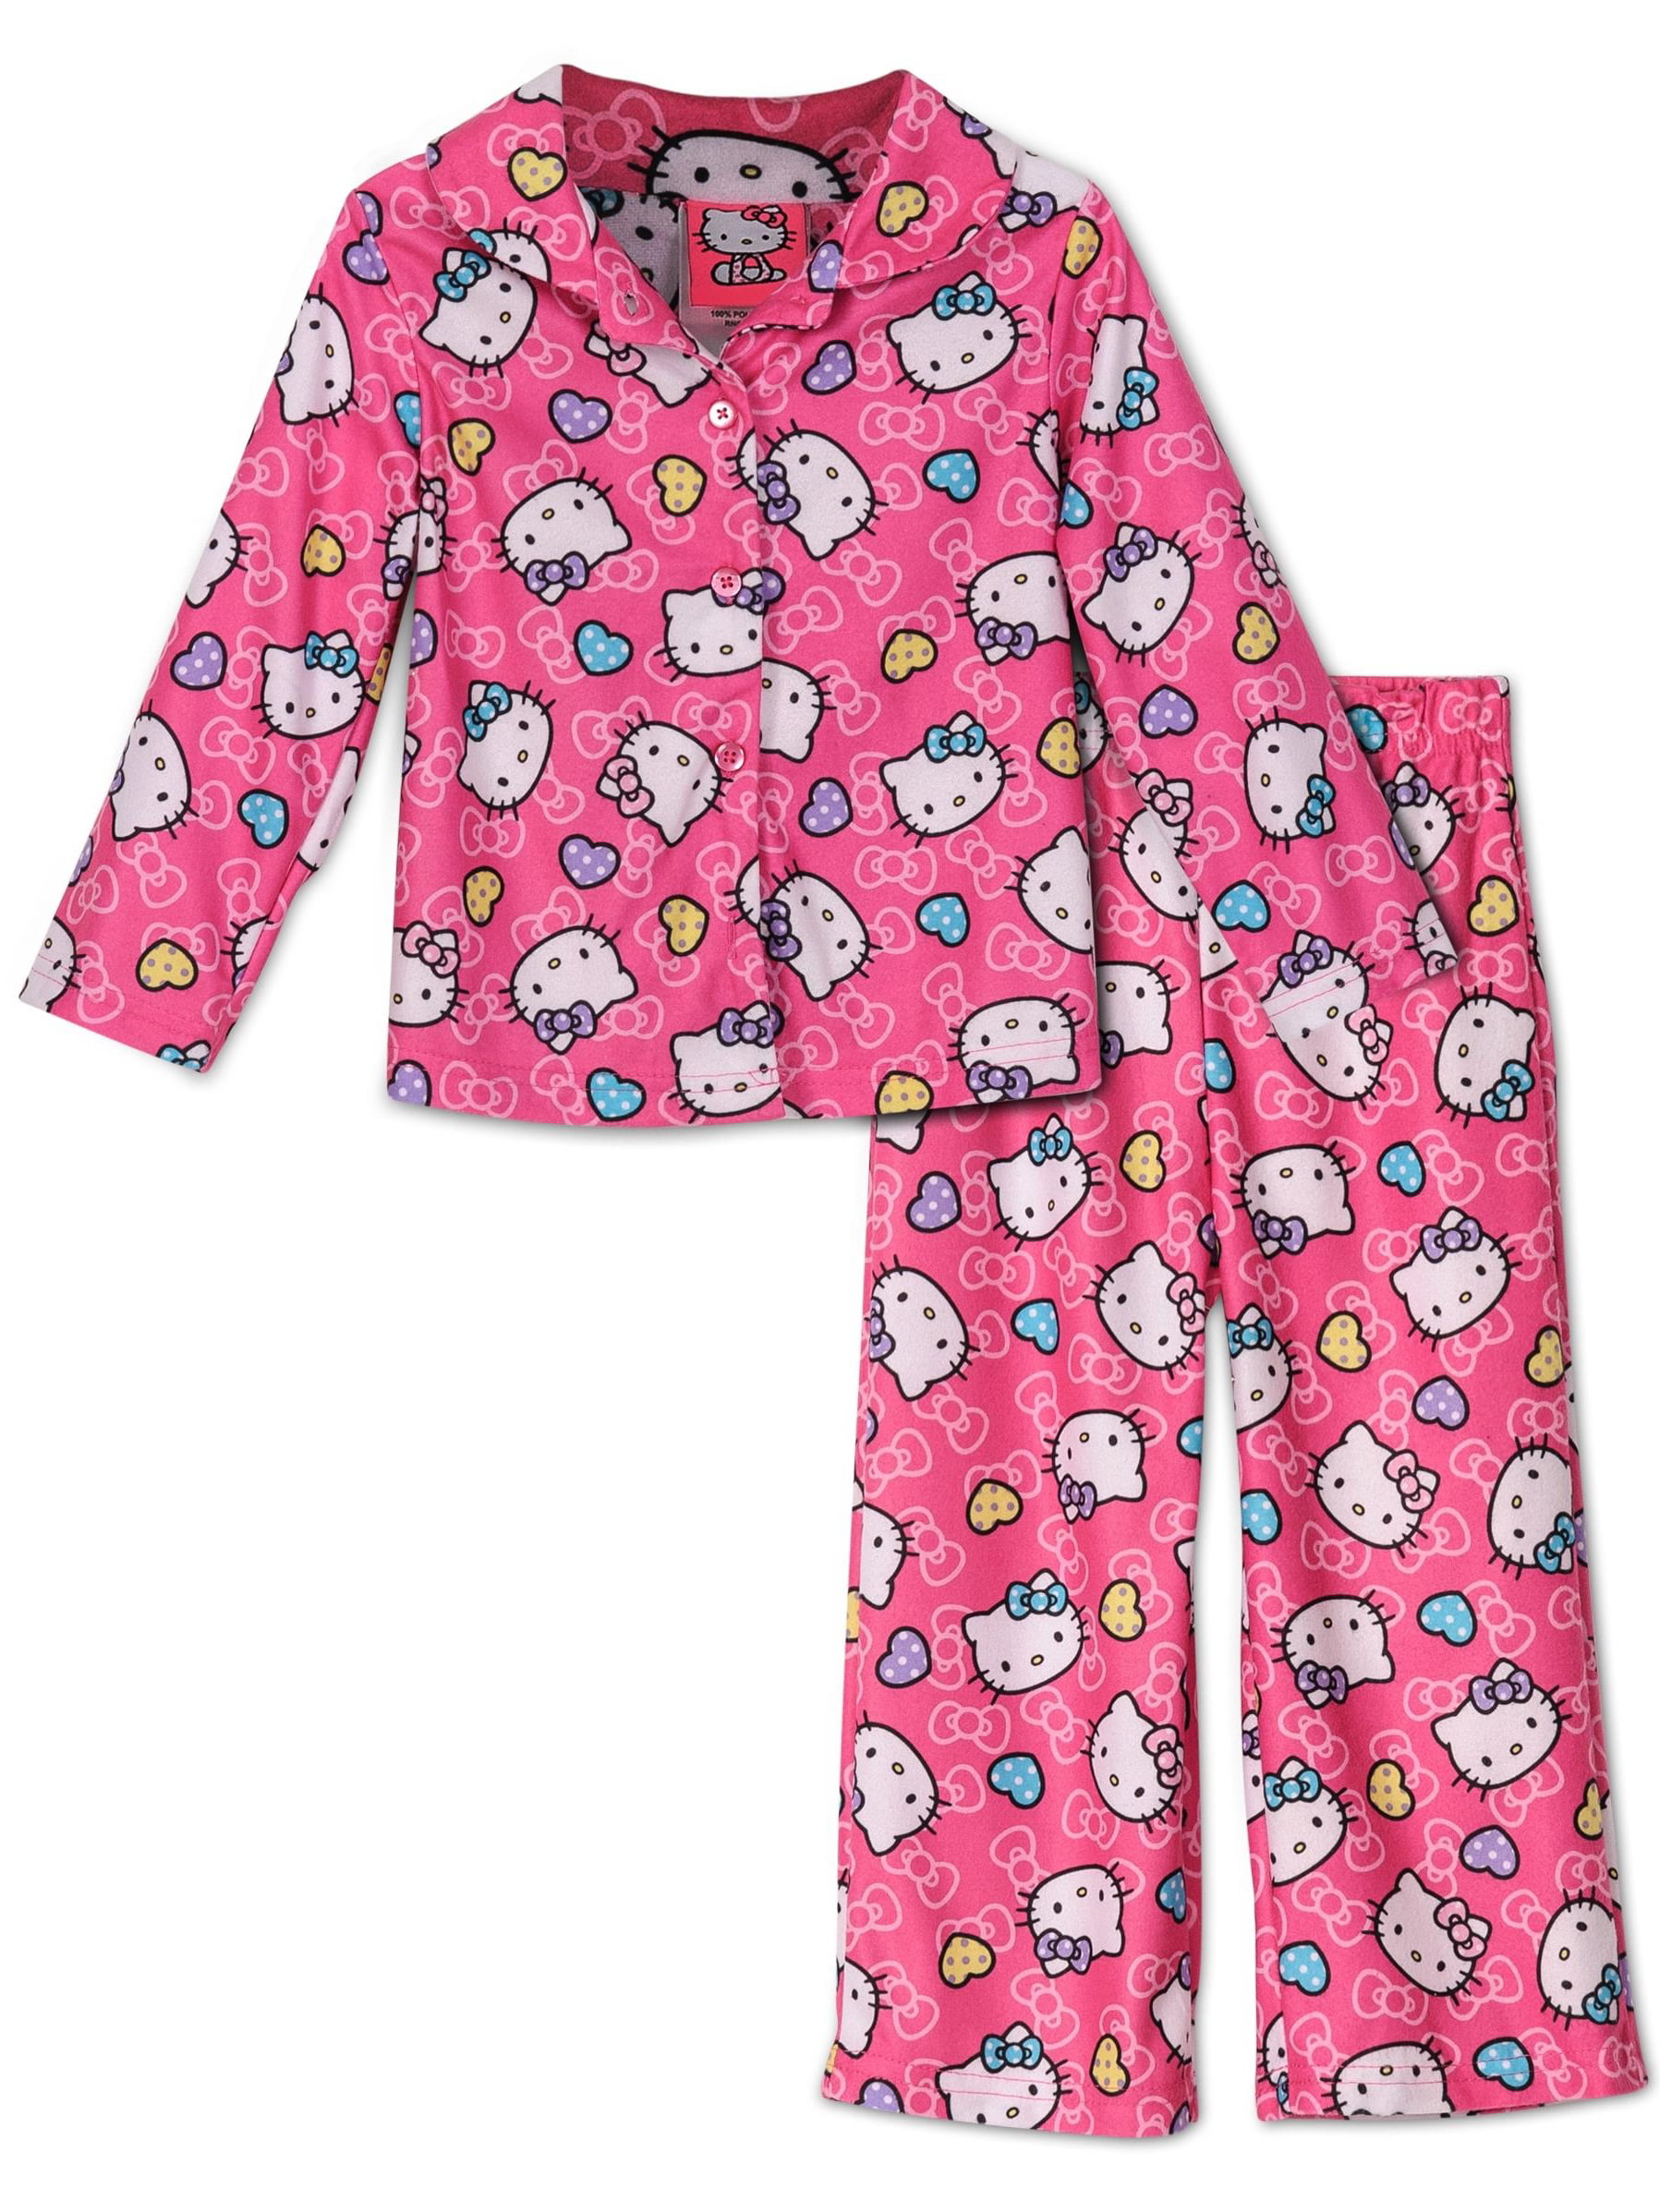 Пижама hello. Хелло Китти пижама со штанами. Пижамные штаны с Хеллоу Китти. Штаны hello Kitty Bershka. Пижама женская hello Kitty 61981.